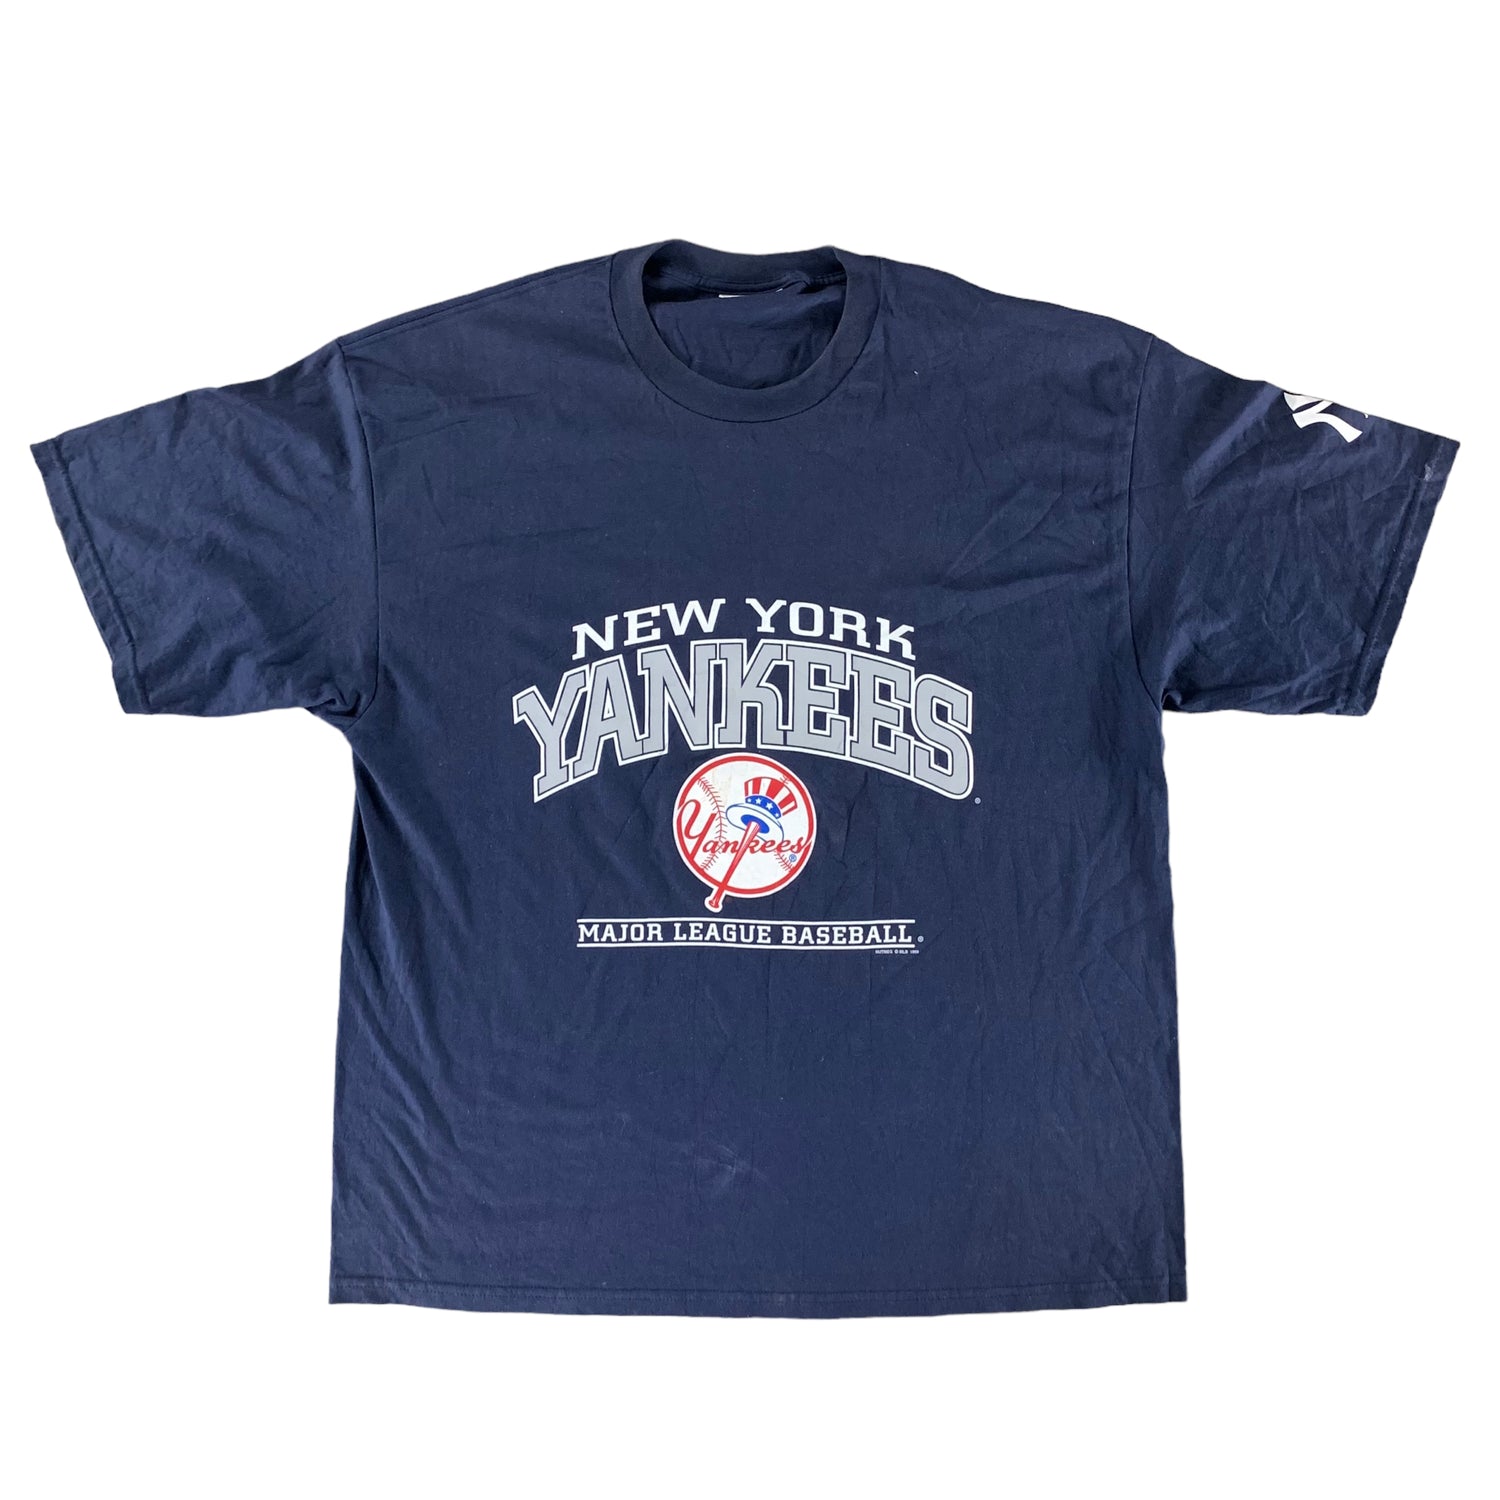 Vintage 1998 New York Yankees T-shirt size XXXL